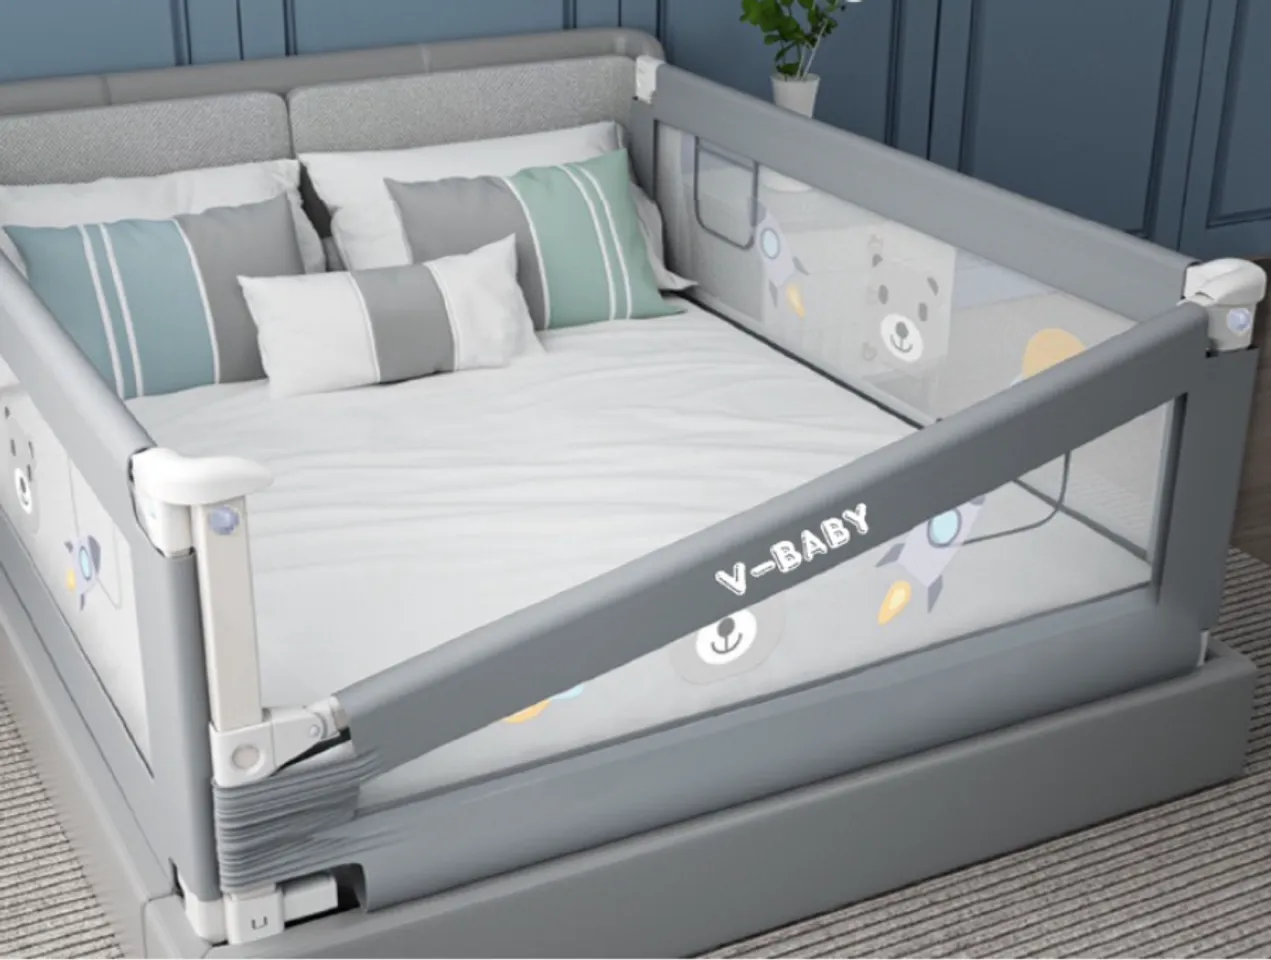 Thanh chắn giường V-BABY N1S màu xám